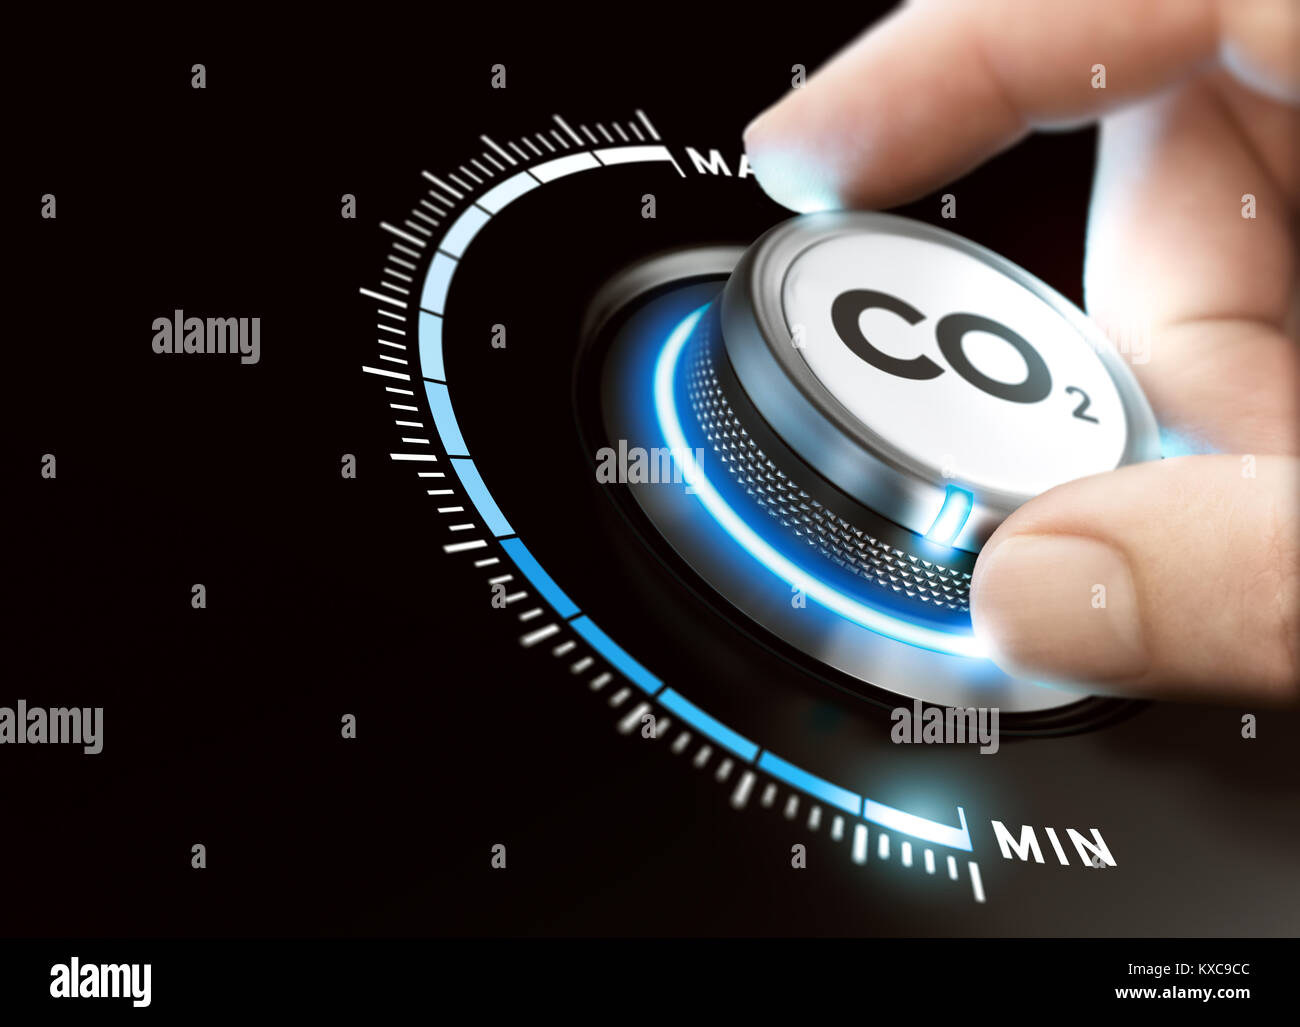 Mann eine Carbon dioxyde Knopf, um die Emissionen zu verringern. CO2-Reduzierung oder Entfernung Konzept. Das zusammengesetzte Bild zwischen einer hand Fotografie und eine 3D-backgroun Stockfoto